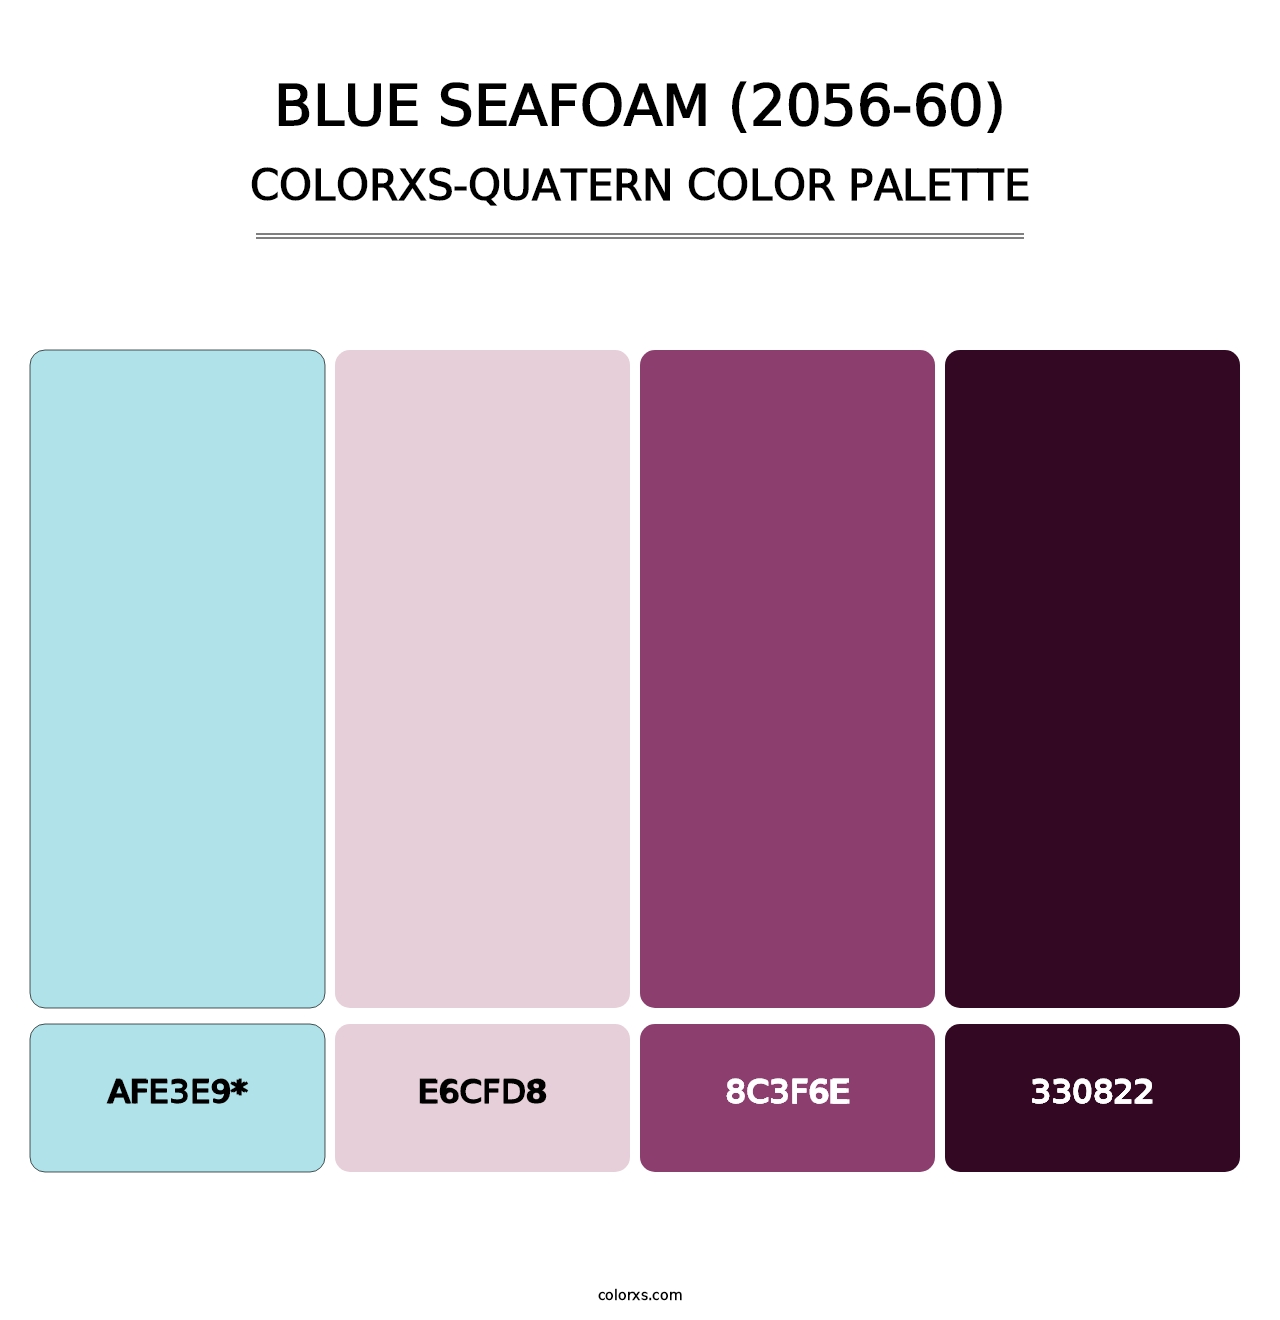 Blue Seafoam (2056-60) - Colorxs Quatern Palette